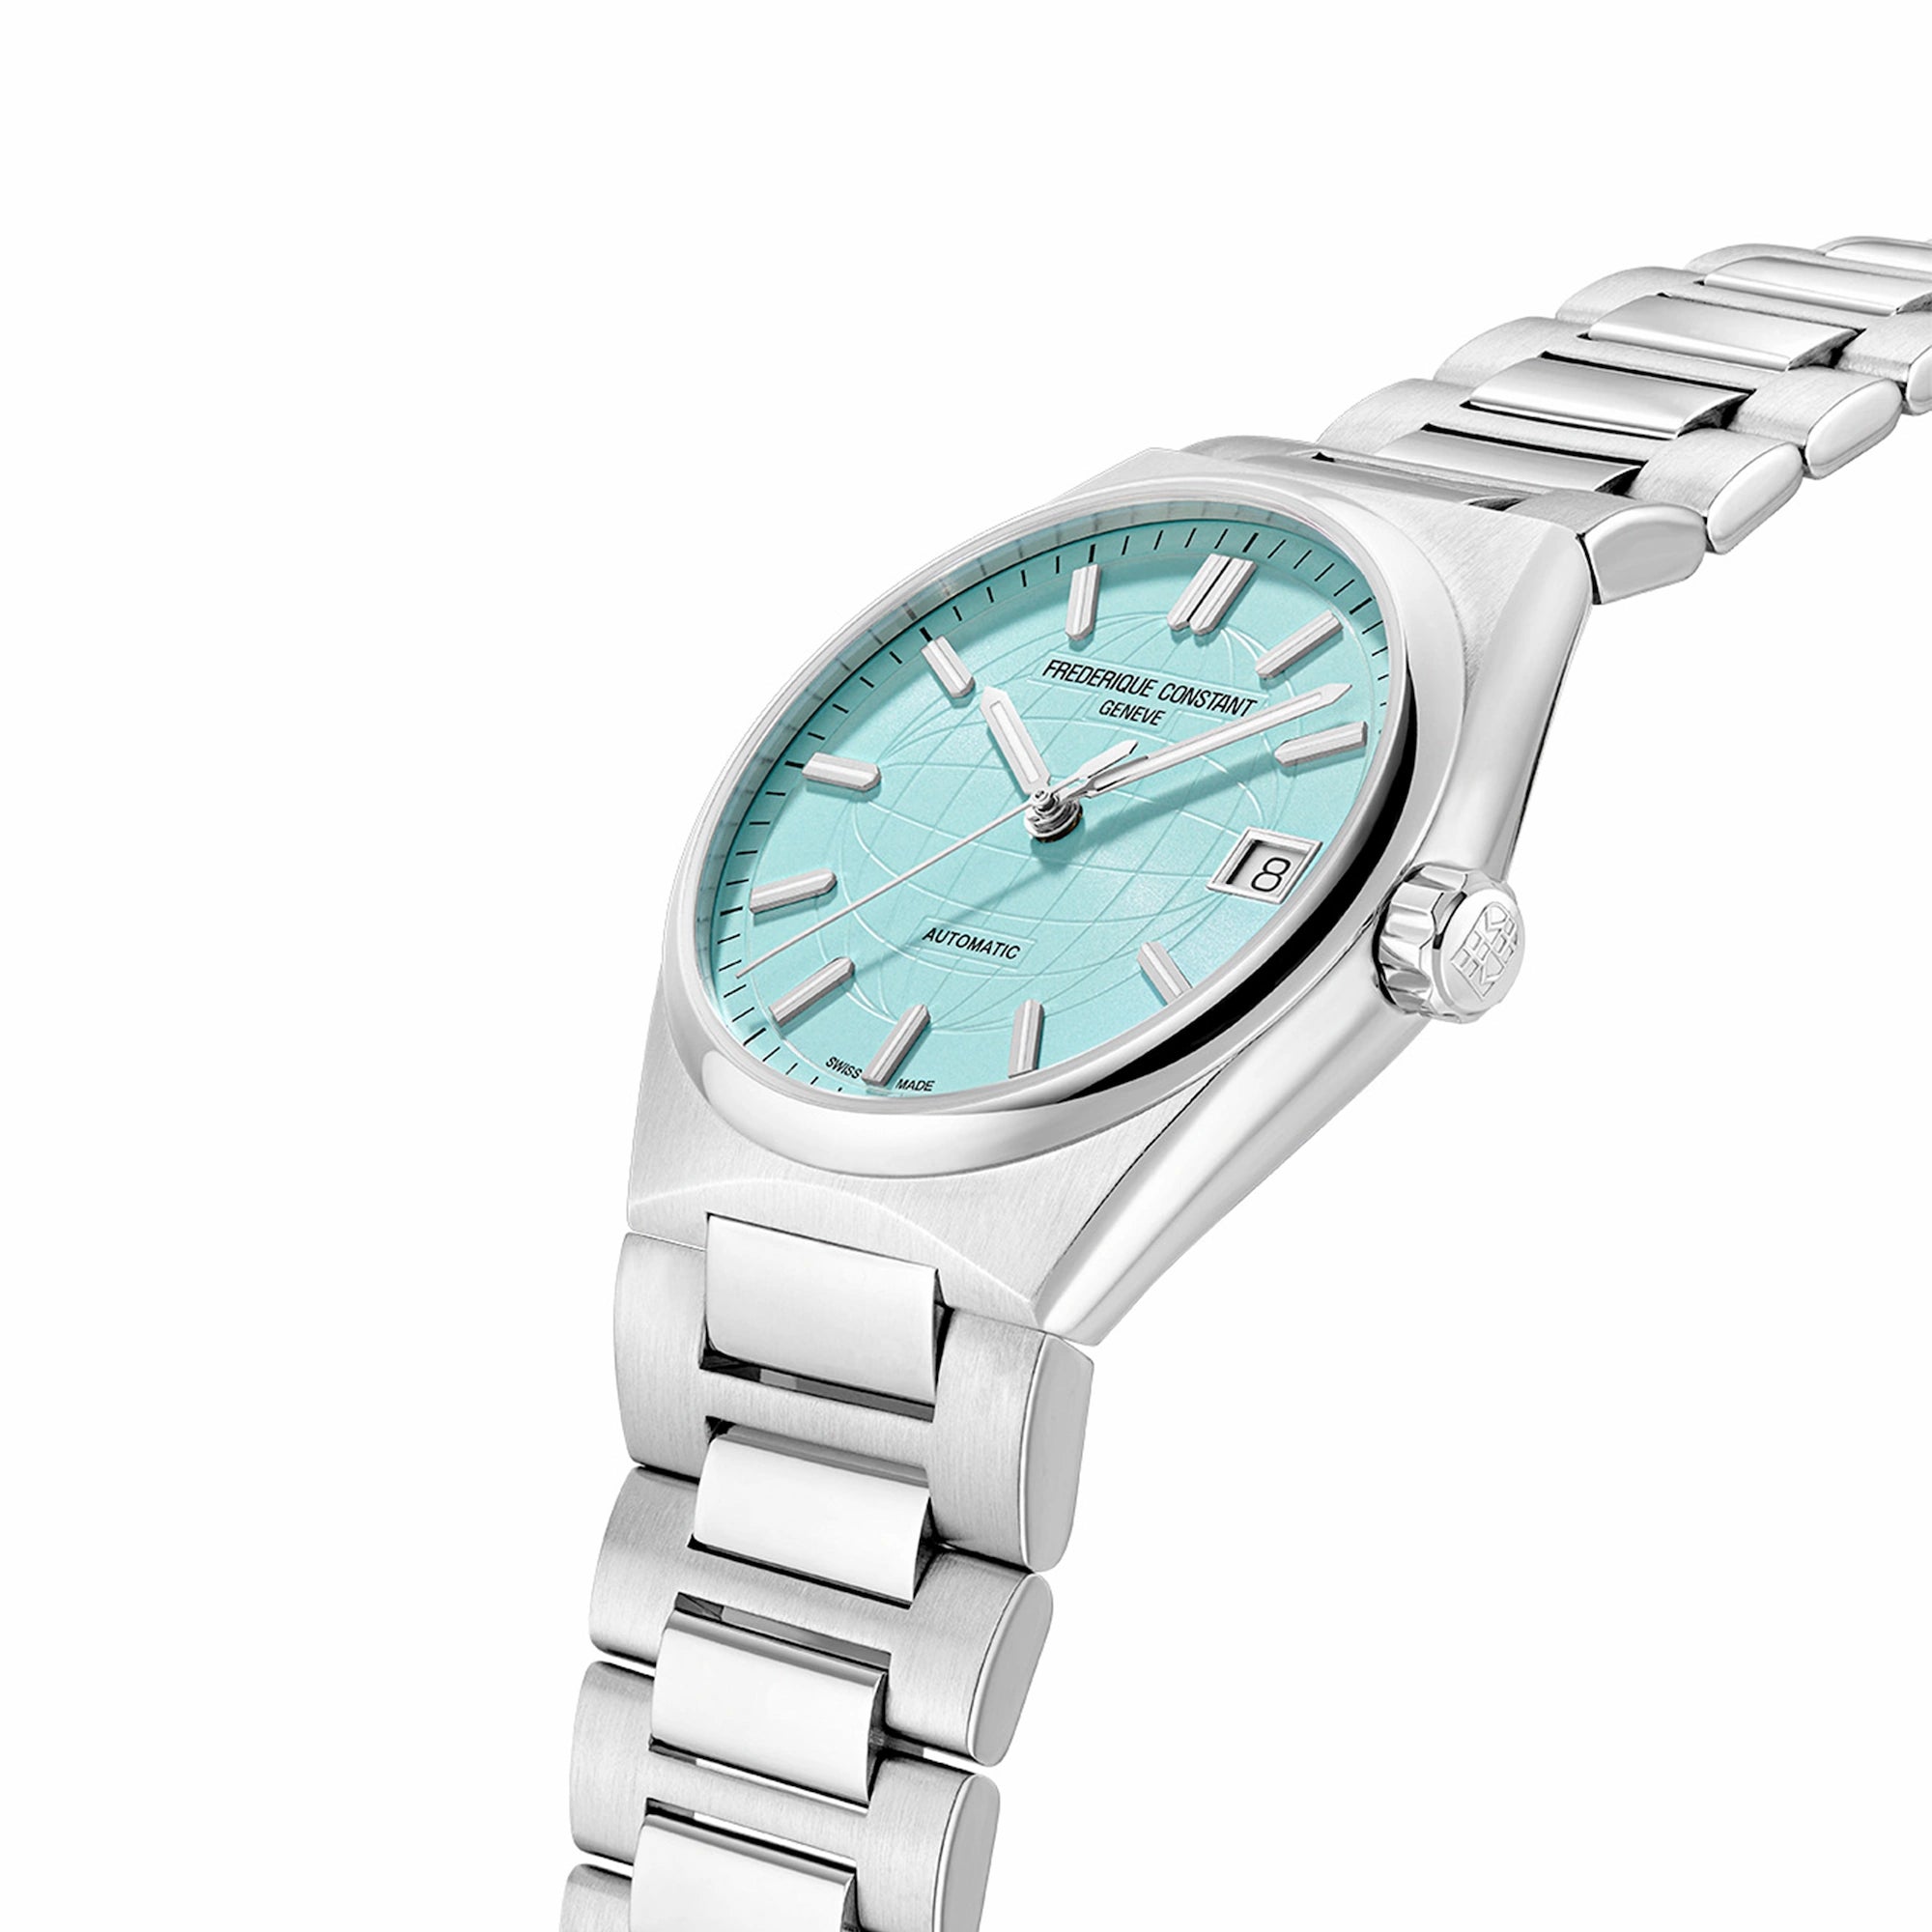 Leicht seitliche Ansicht der der Frederique Constant Uhr "Highlife Ladies Automatic" mit dem Tiffany-blauen Ziferblatt und Edelstahl-Gehäuse